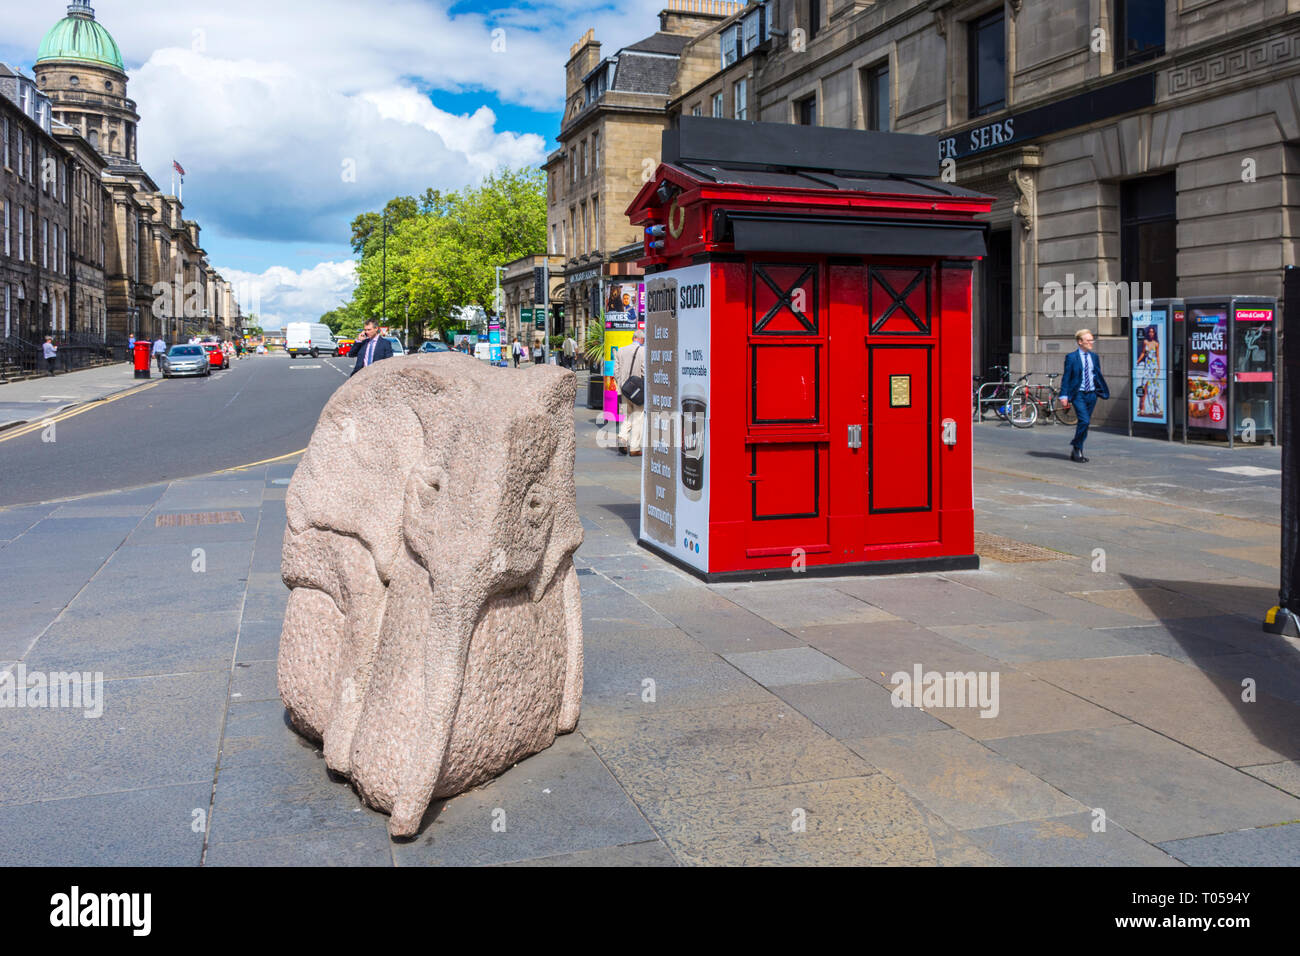 Baby Elefant, eine Skulptur von Ronald Rae, und ein ehemaliger Polizei, an der Ecke der Hope Street und die Princes Street, Edinburgh, Schottland, Großbritannien. Stockfoto